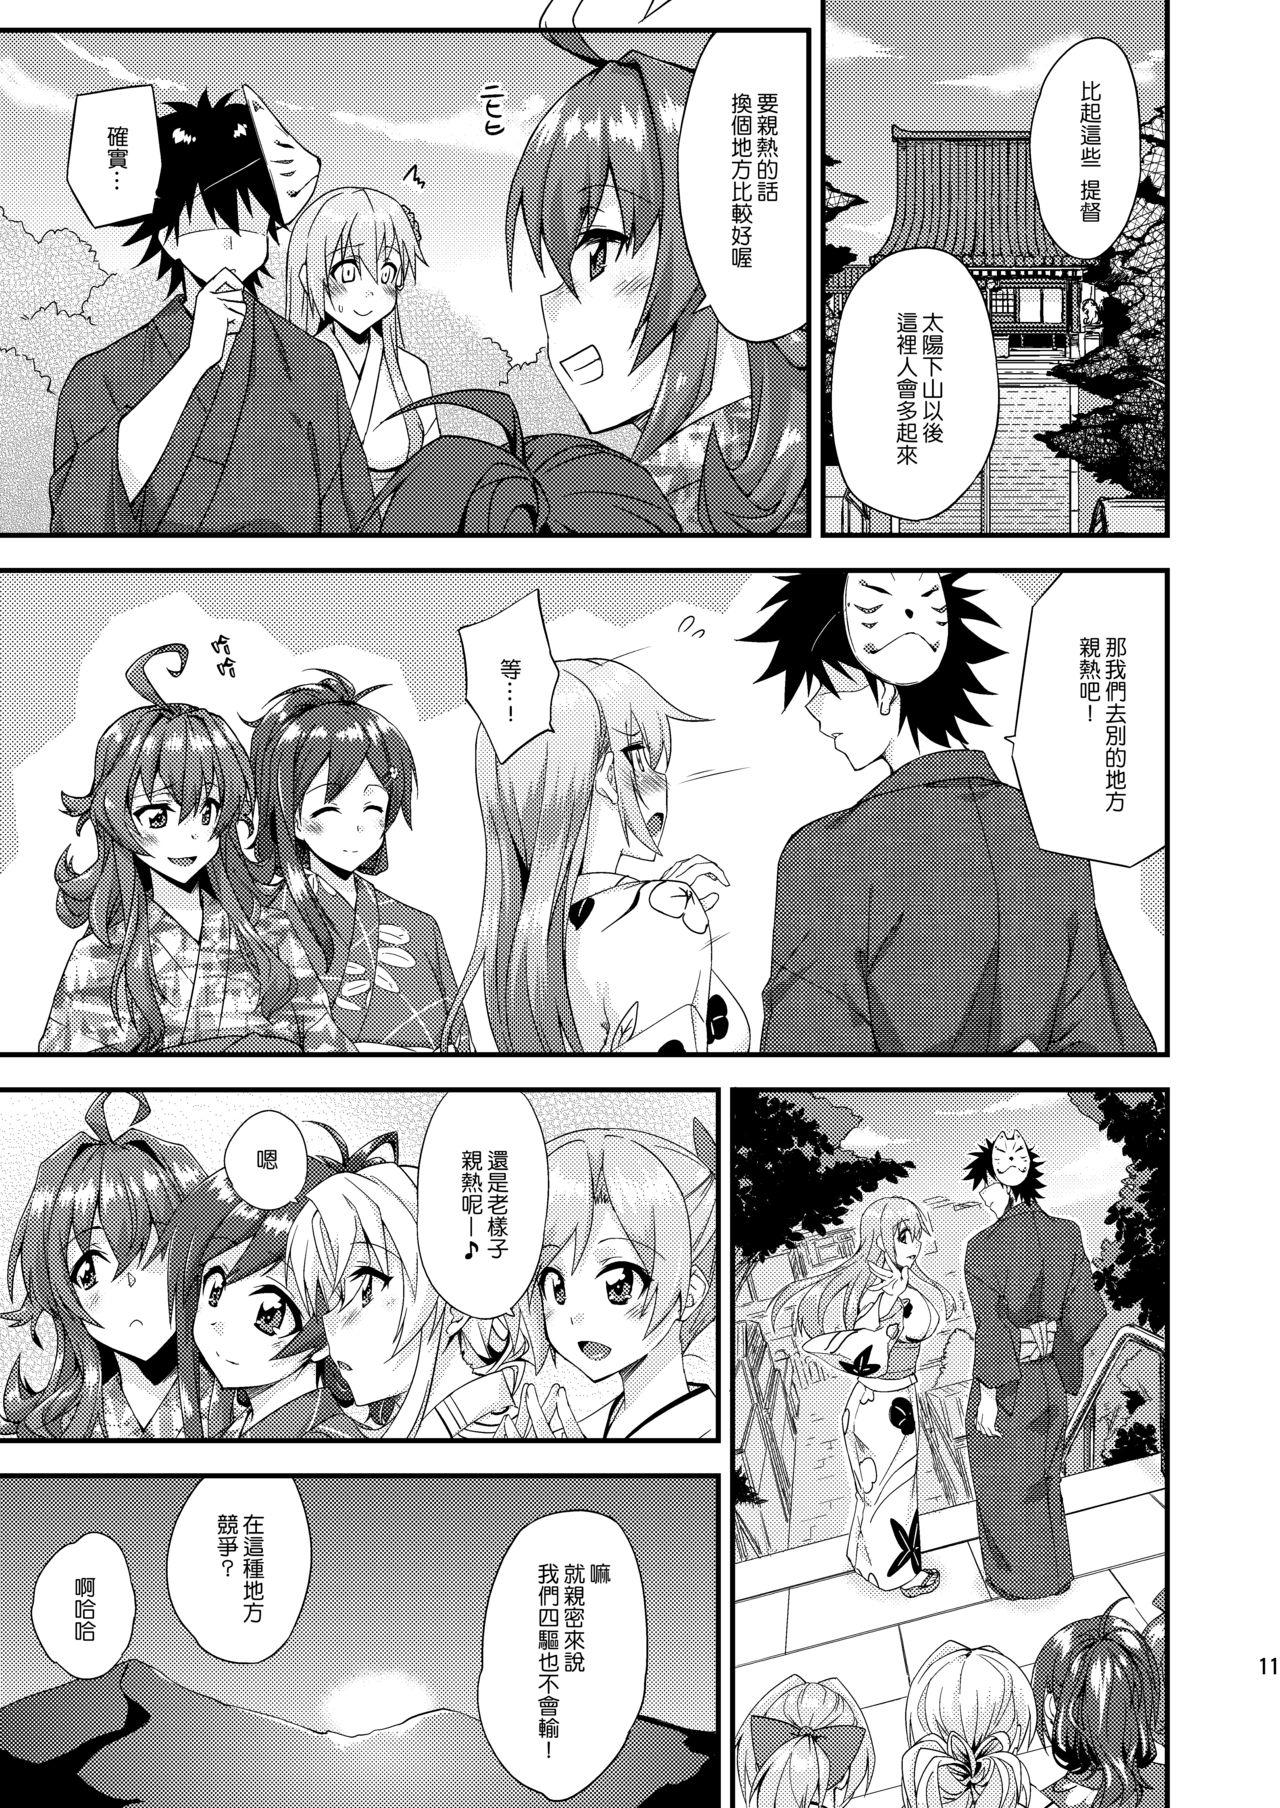 Spreading Suzuya to Dousuru? Nani Shichau? 13 - Kantai collection Money - Page 11